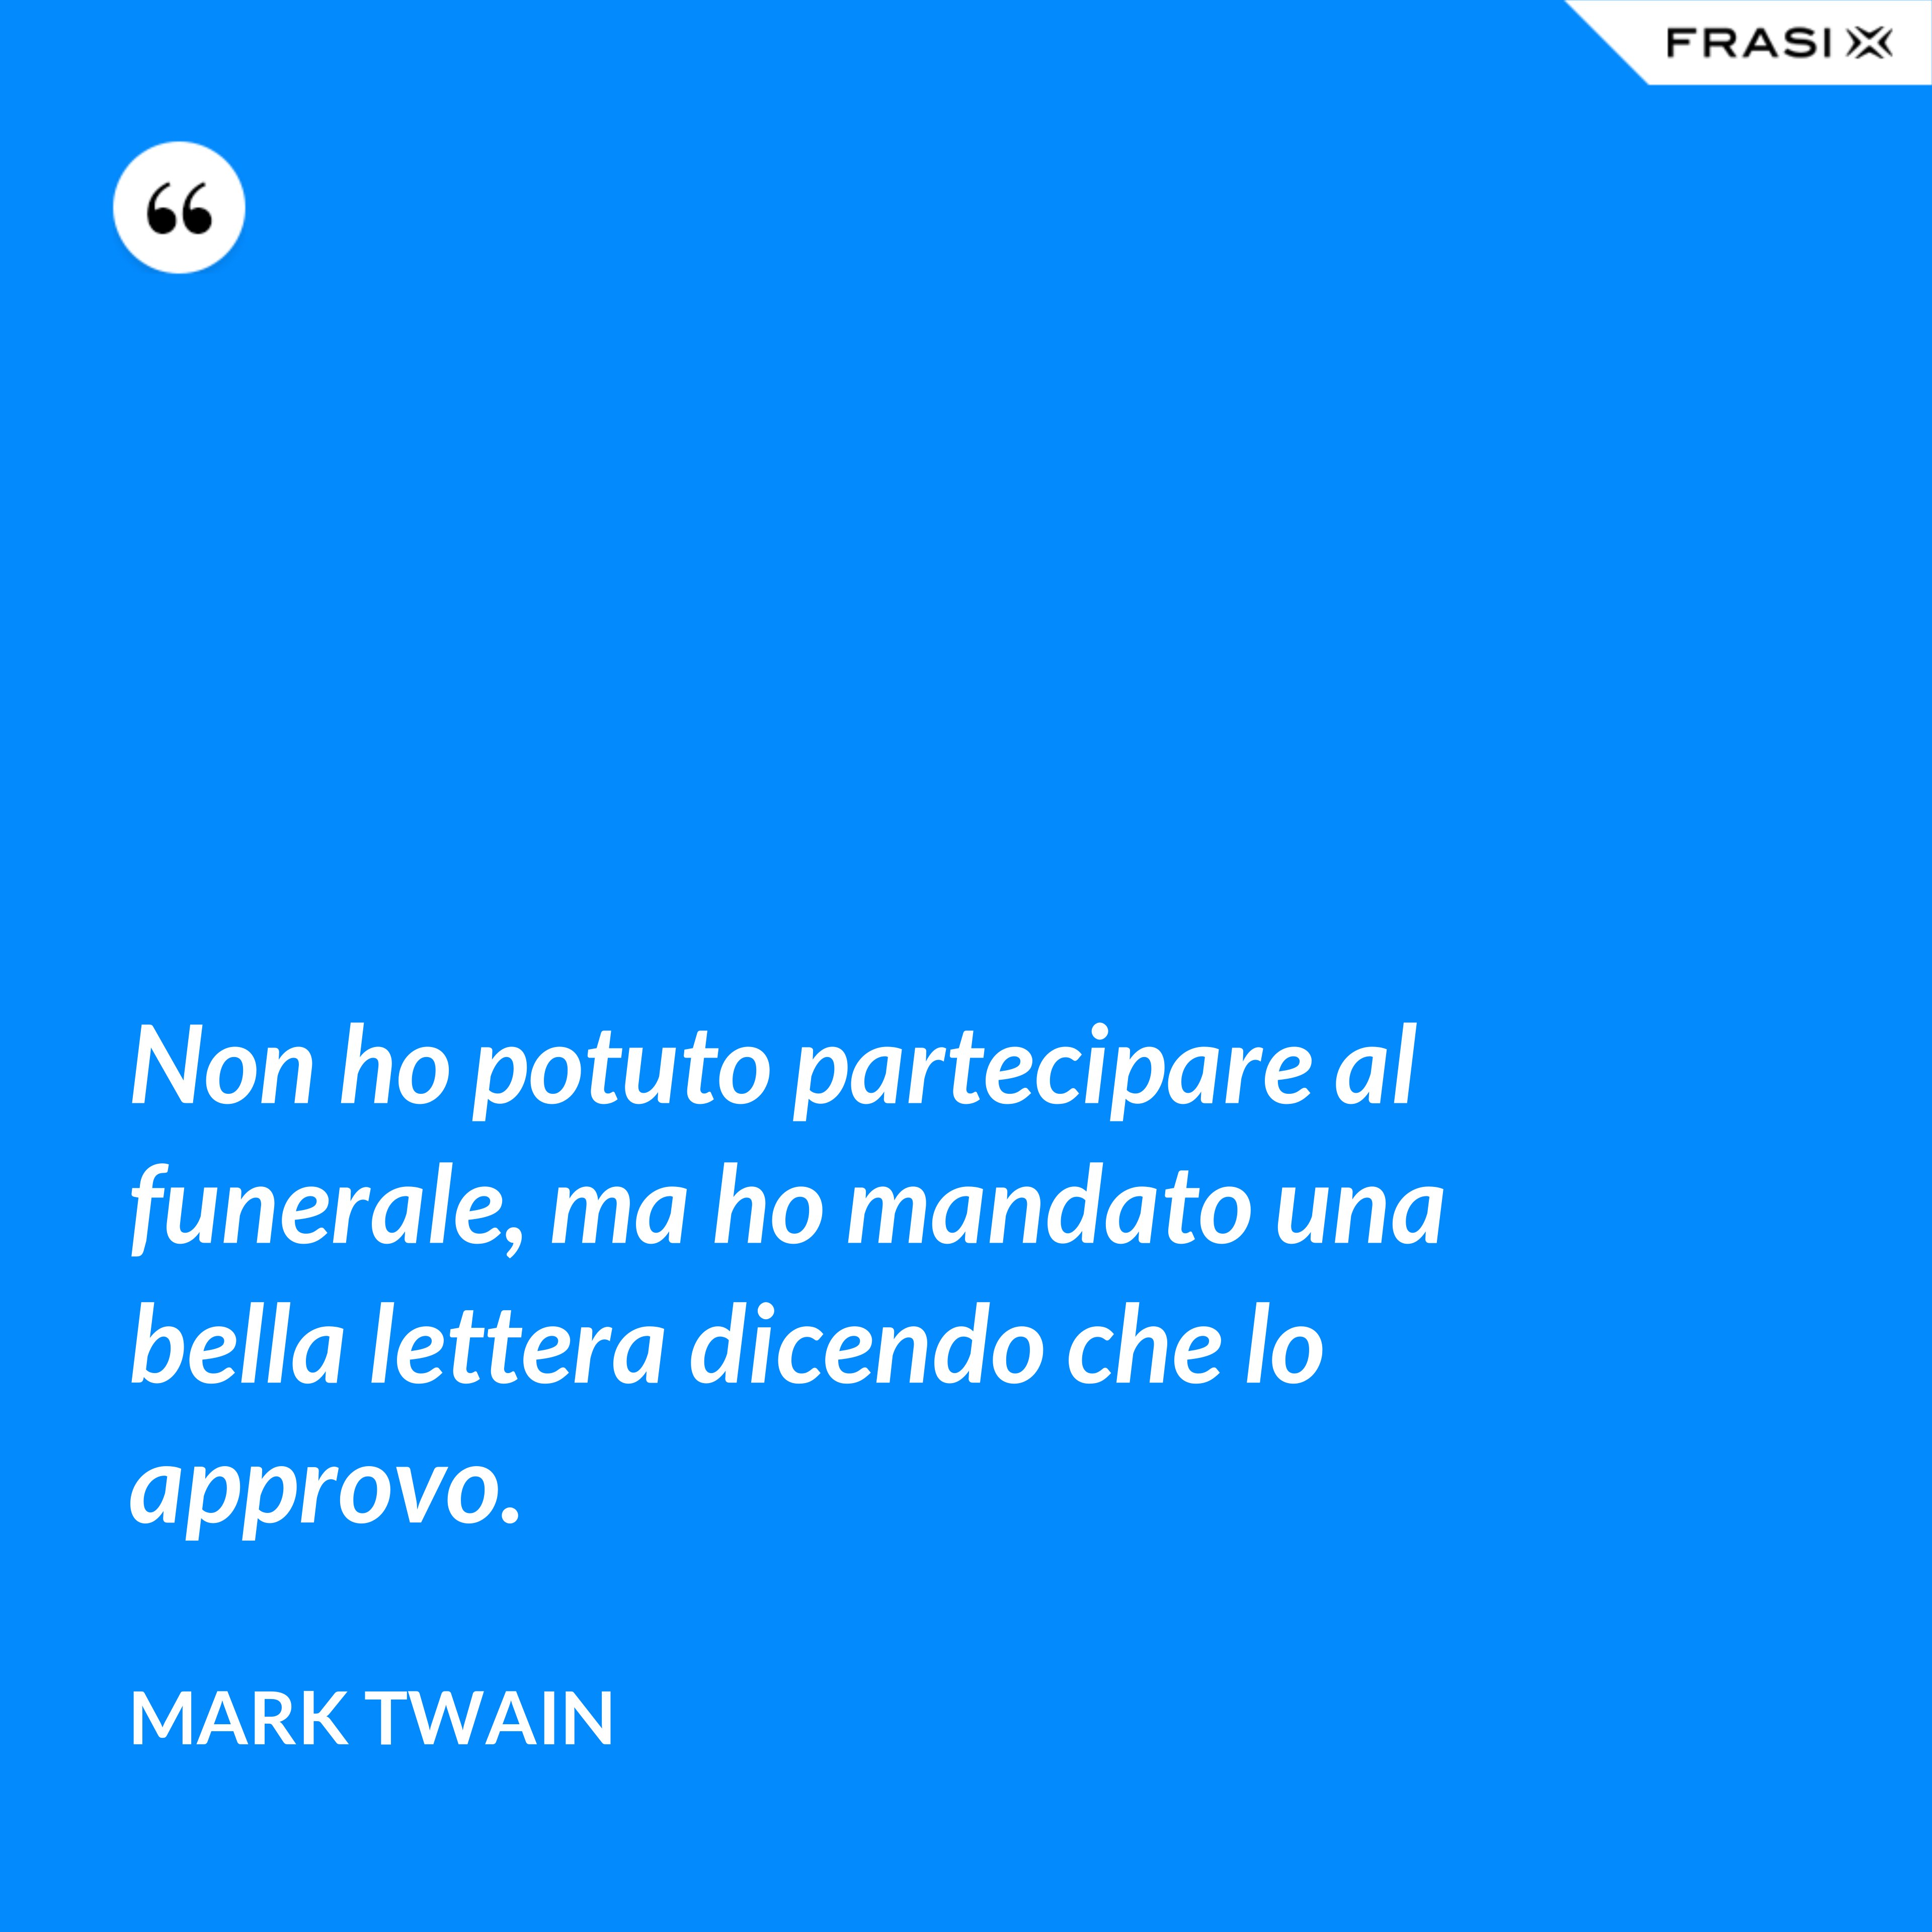 Non ho potuto partecipare al funerale, ma ho mandato una bella lettera dicendo che lo approvo. - Mark Twain